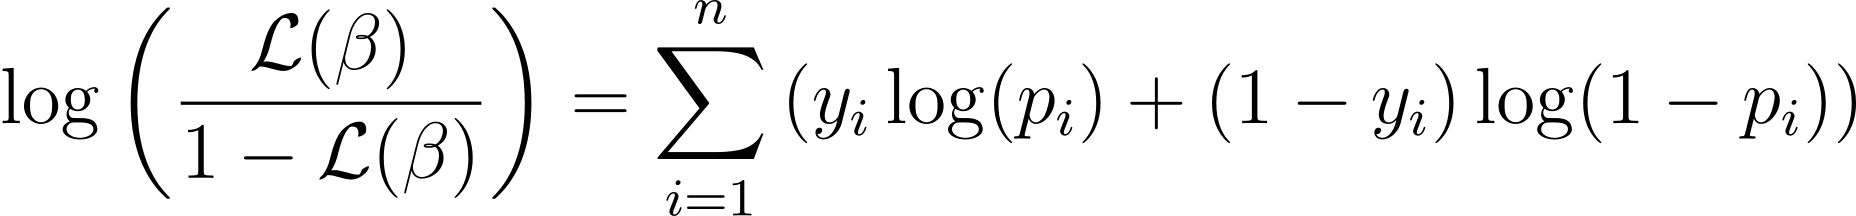 Construindo modelos preditivos: regressão logística em Python